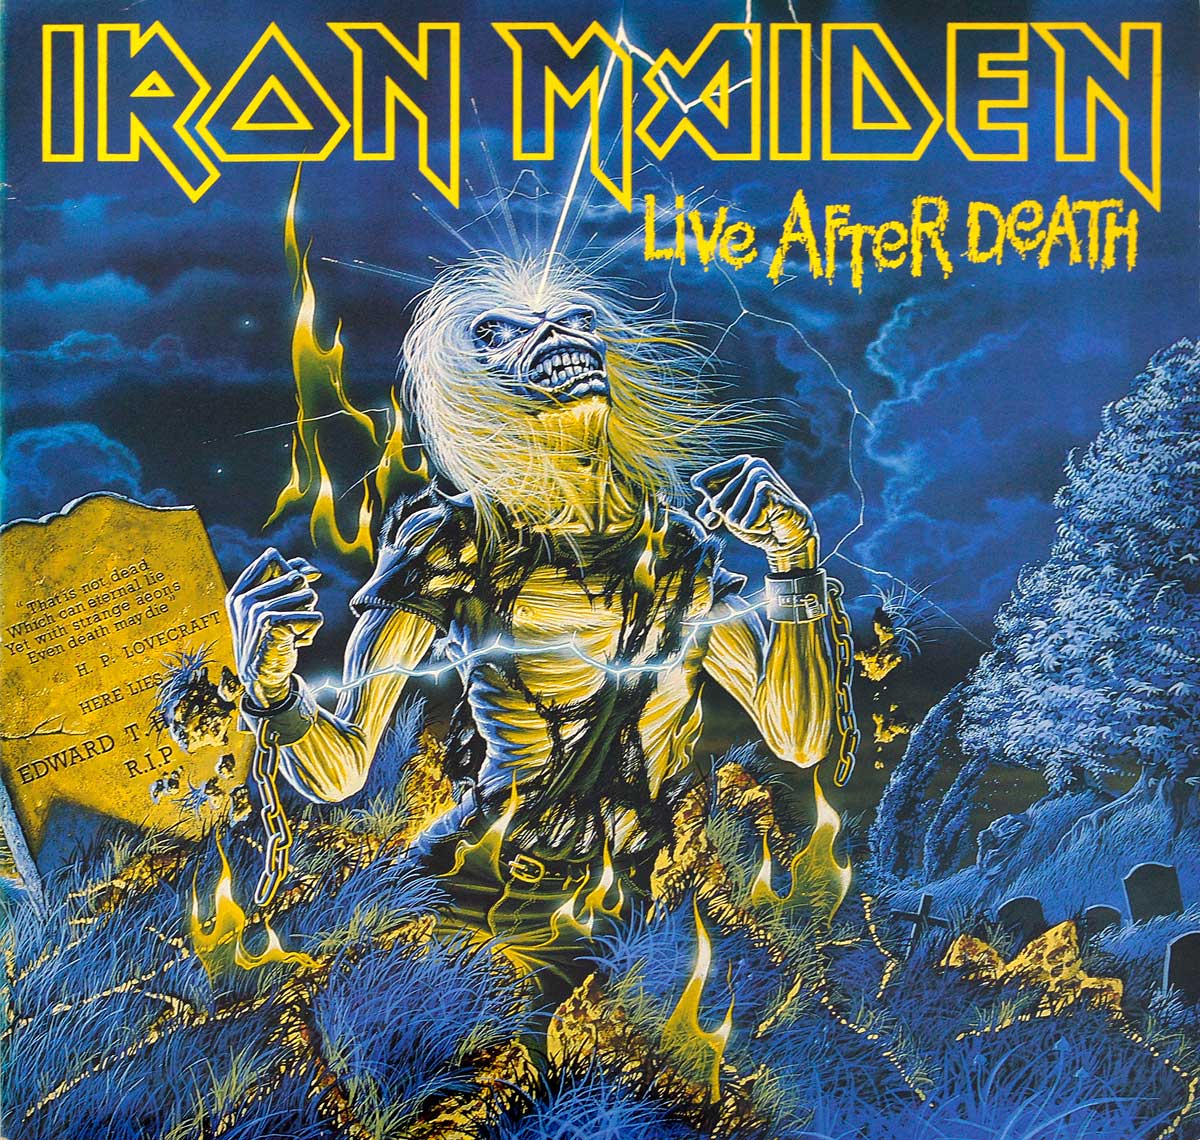 large album front cover photo of: IRON MAIDEN Live After Death 2LP (incl. Booklet) (EU)  12"  ALBUM VINYL  